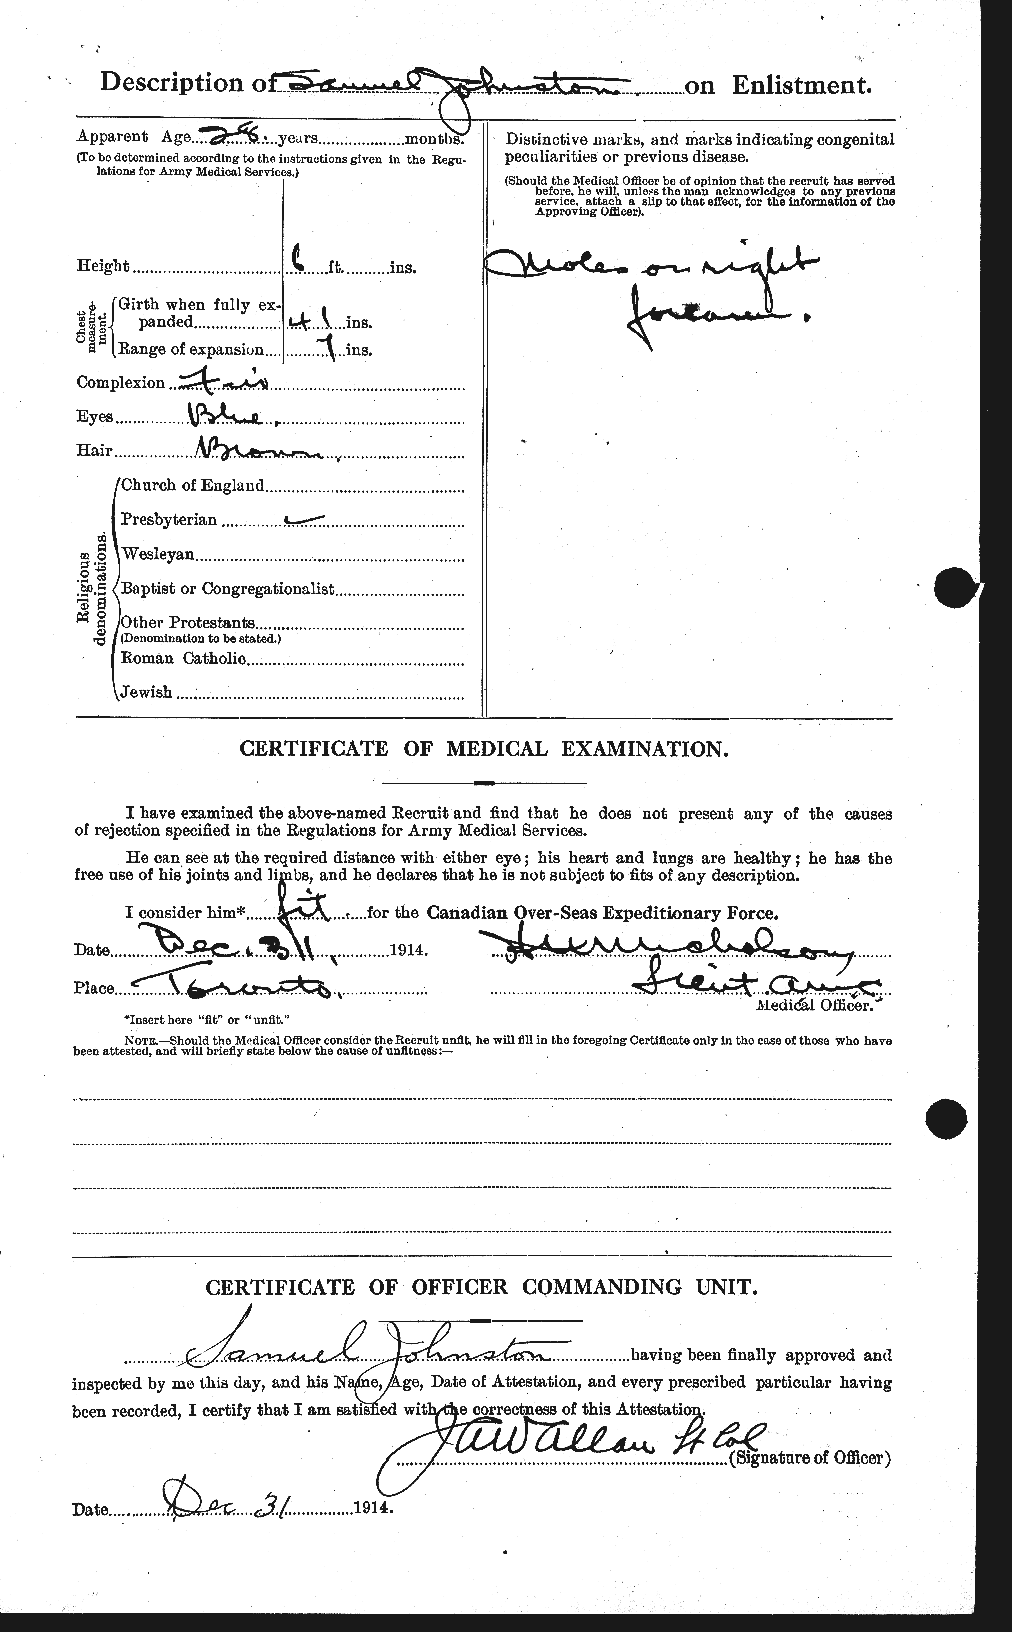 Dossiers du Personnel de la Première Guerre mondiale - CEC 427082b